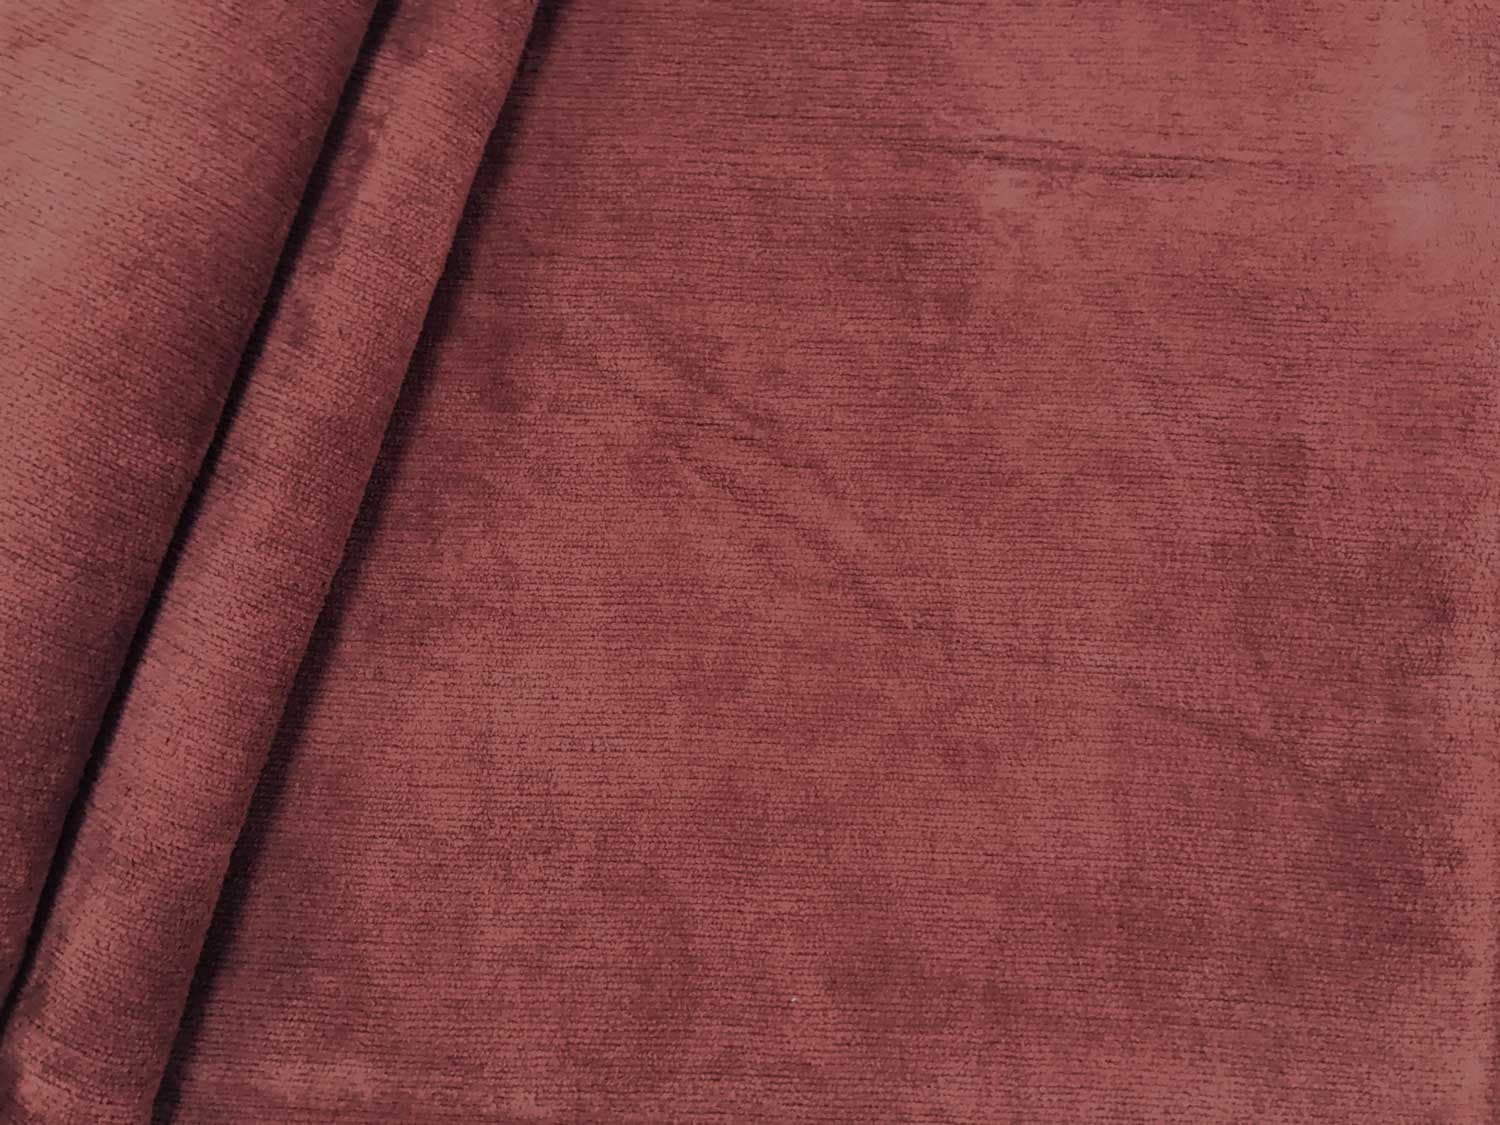 Designer High Quality New Soft Pile Chenille Velvet Upholstery Fabric New Brown 